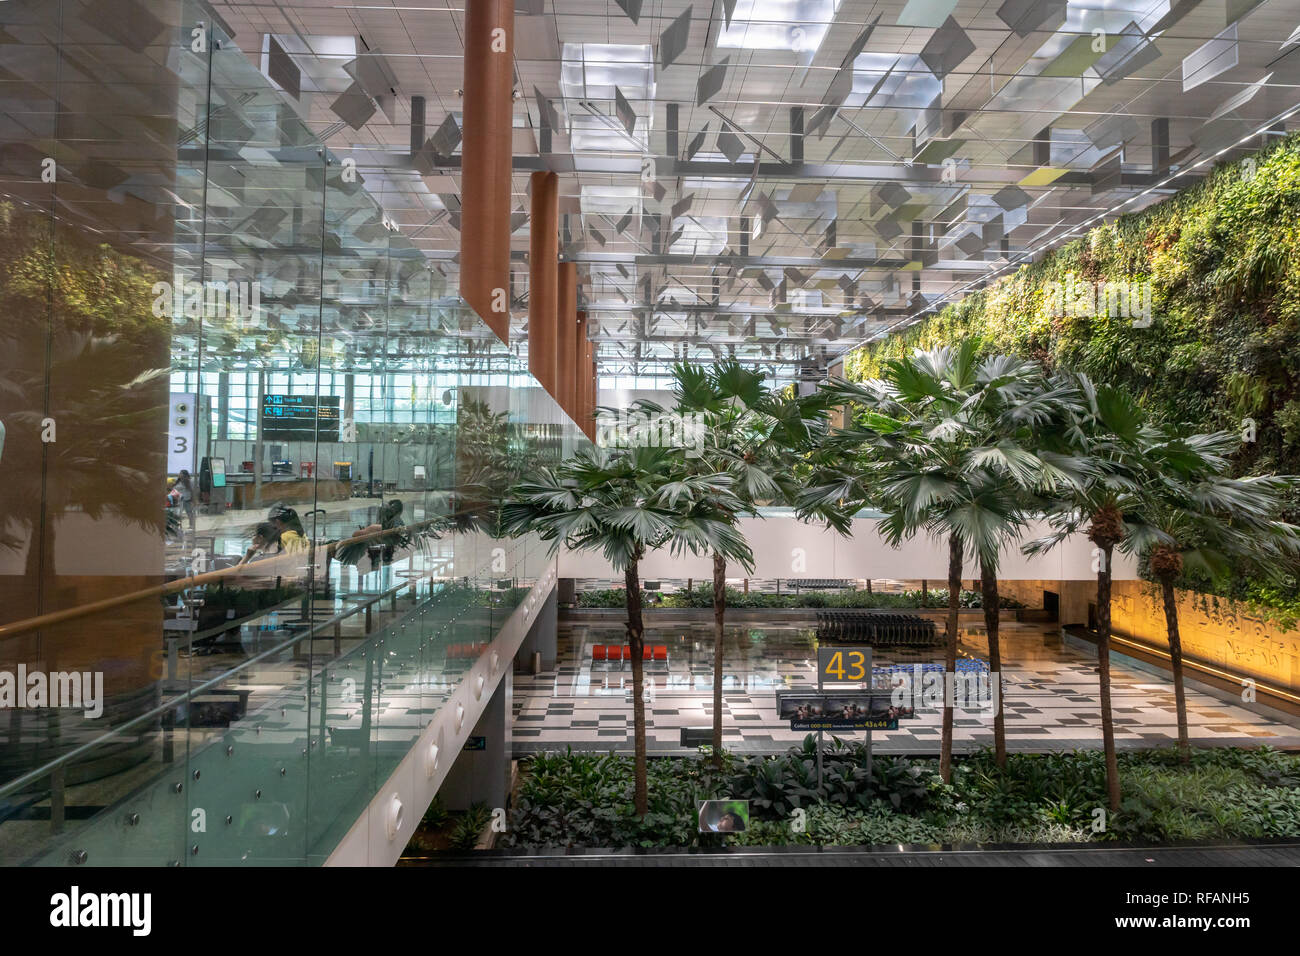 Singapour - Janvier 2019 : l'aéroport de Singapour Changi architecture et passagers. Singapour. L'aéroport de Changi est l'un des plus grands aéroports en Asie. Banque D'Images